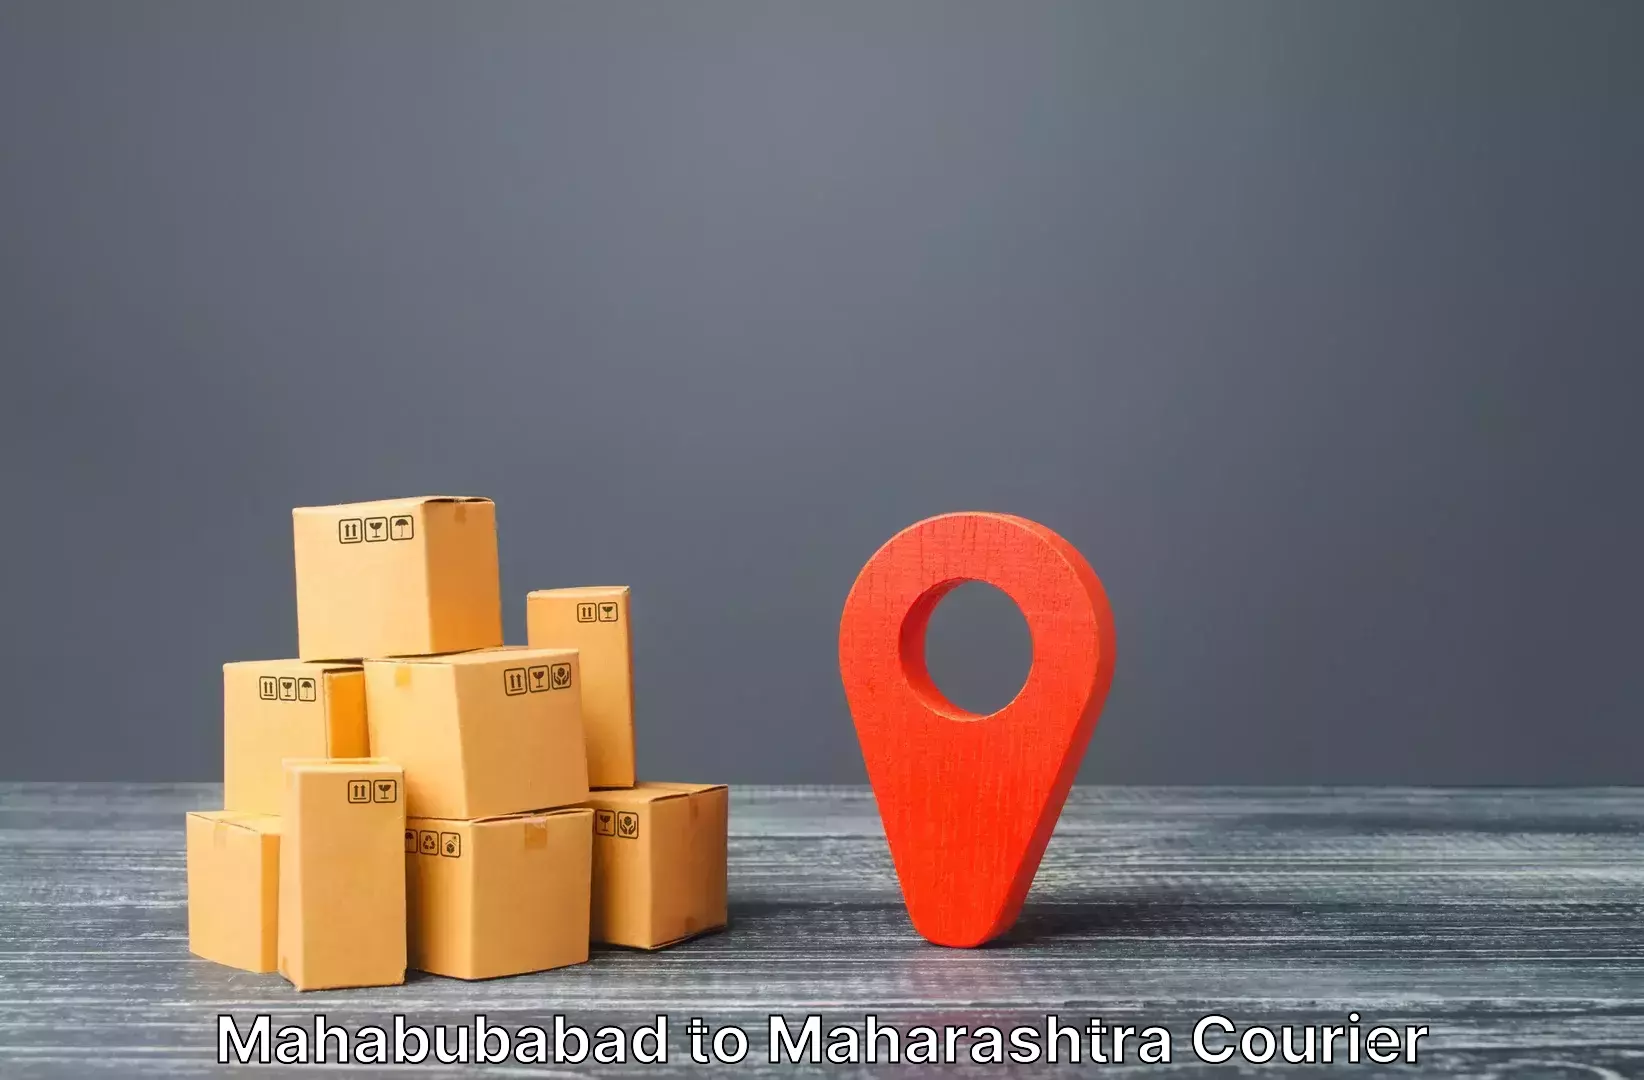 Personalized luggage shipping Mahabubabad to Ganpatipule